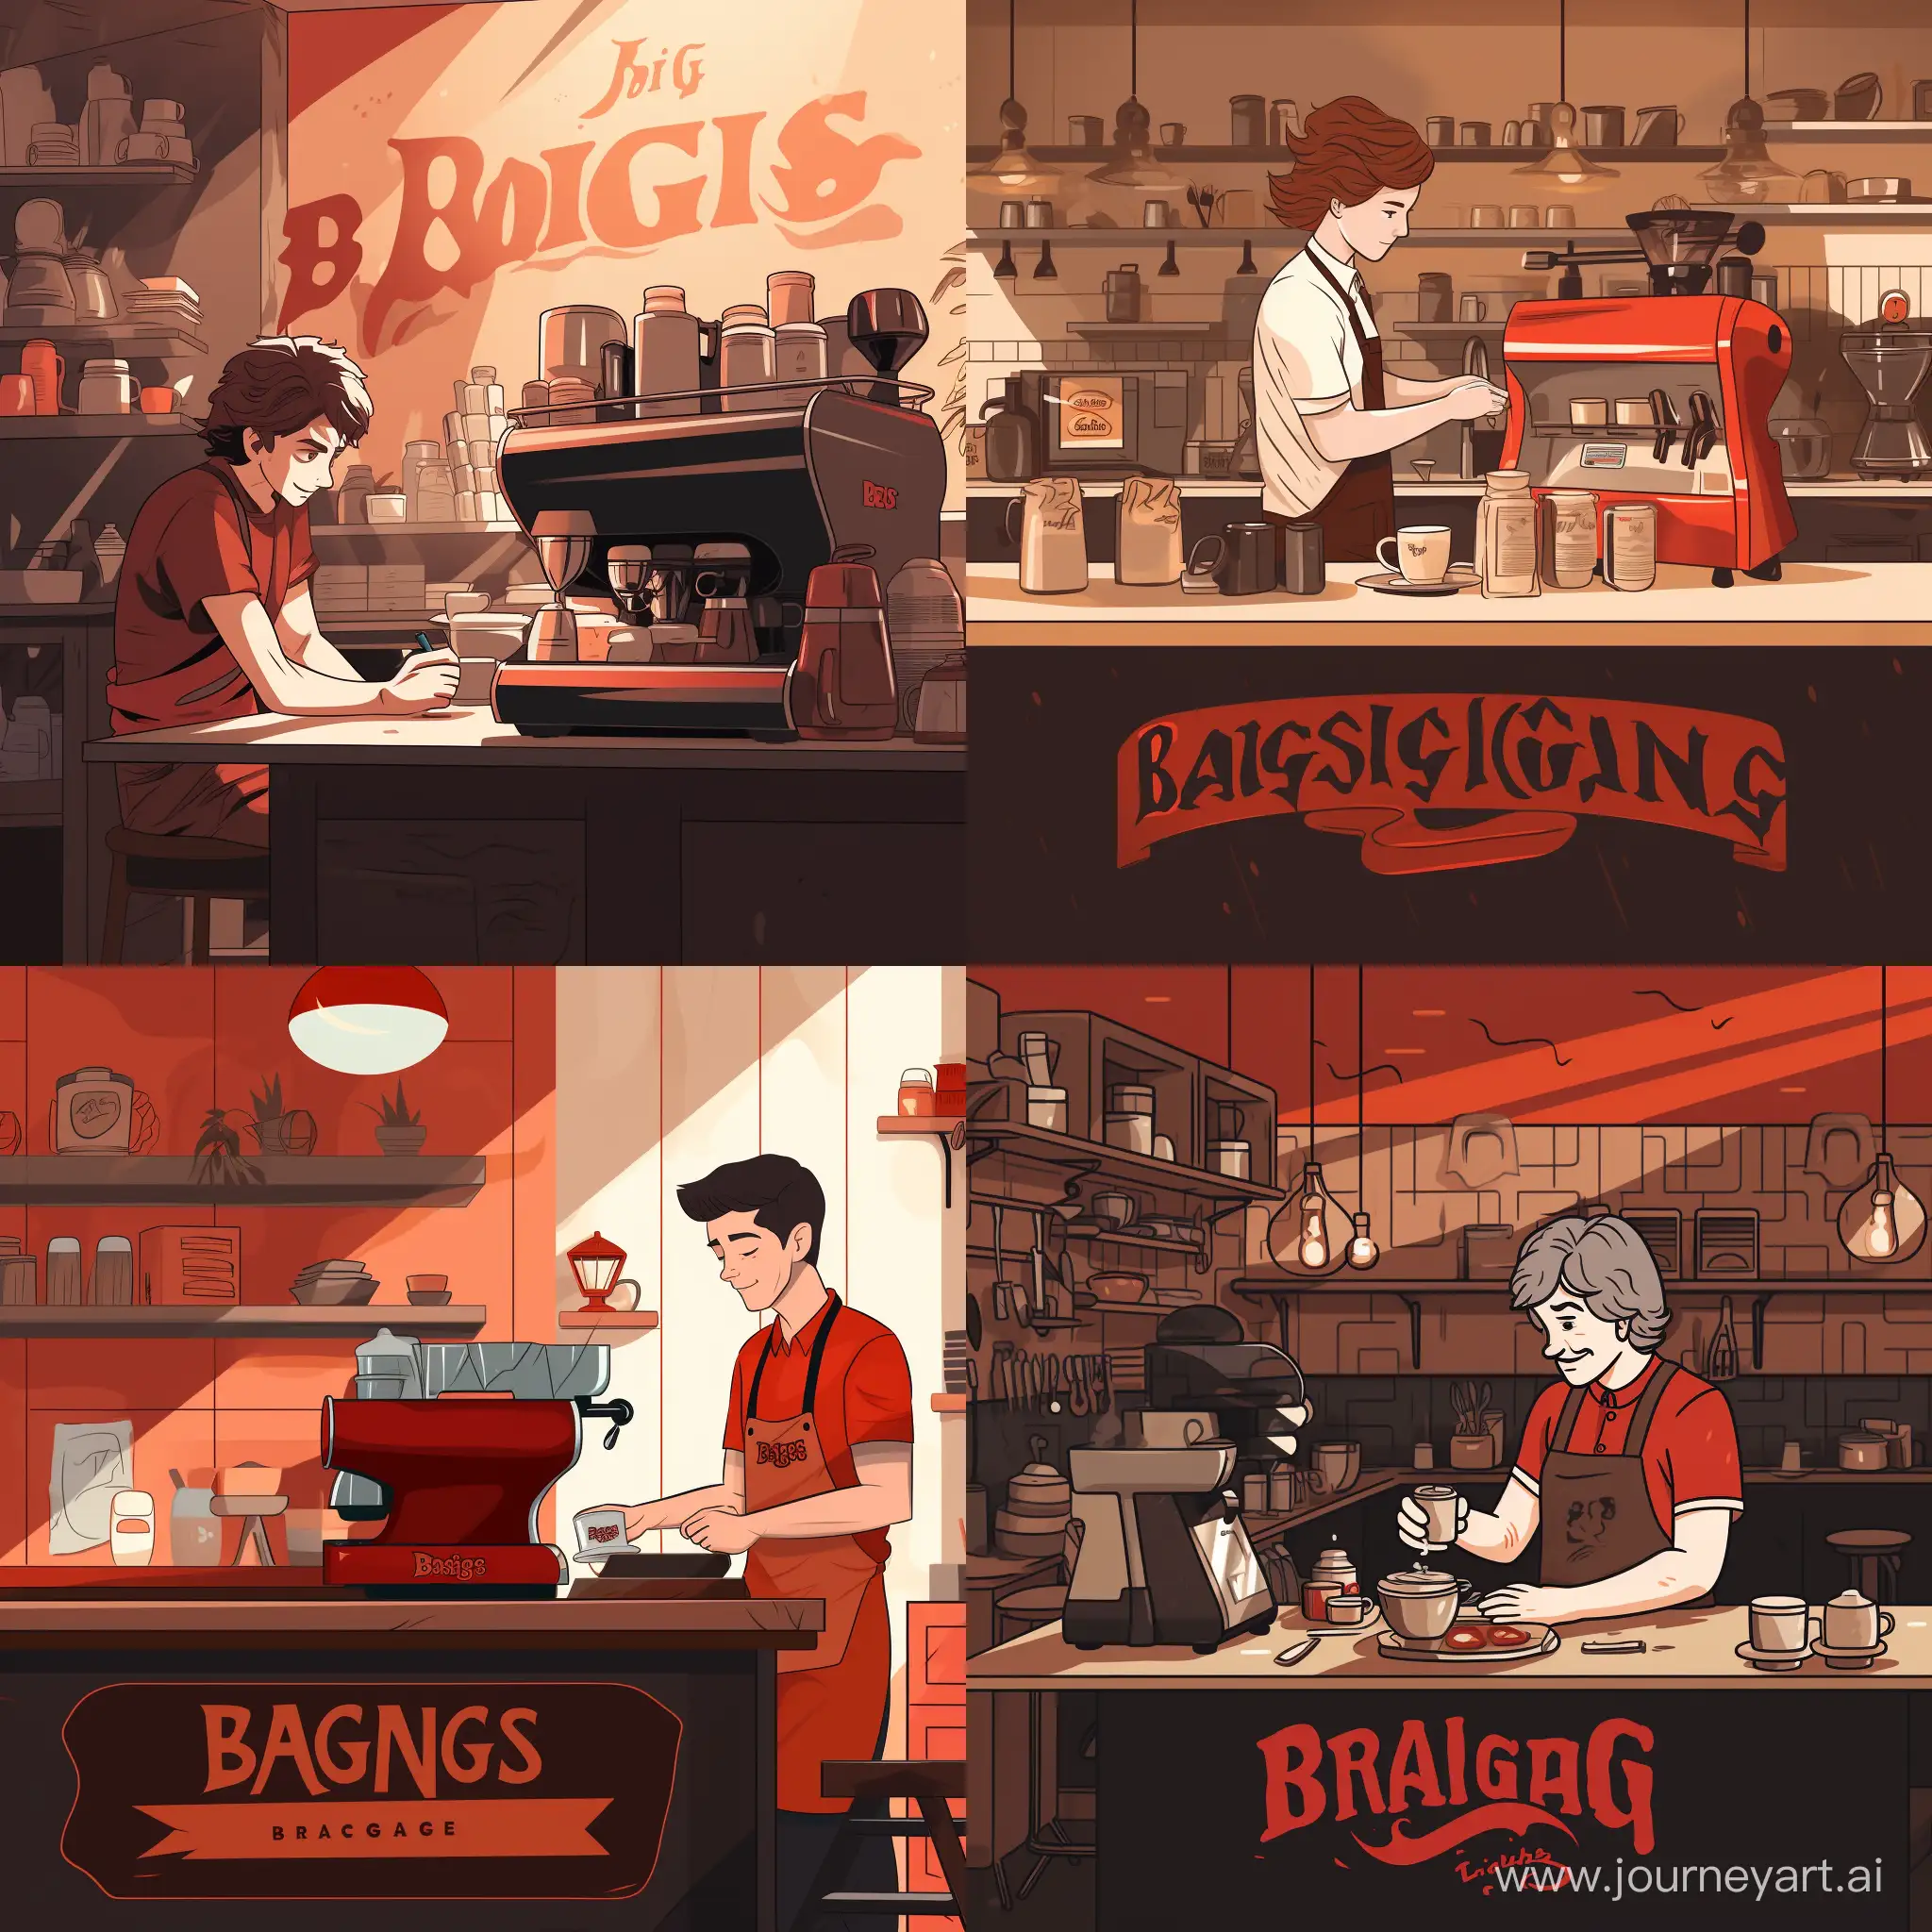 Бариста готовит кофе с собой в большой кофейне в красной чёрных тонах и логотип позади с надписью "baggins cofee"